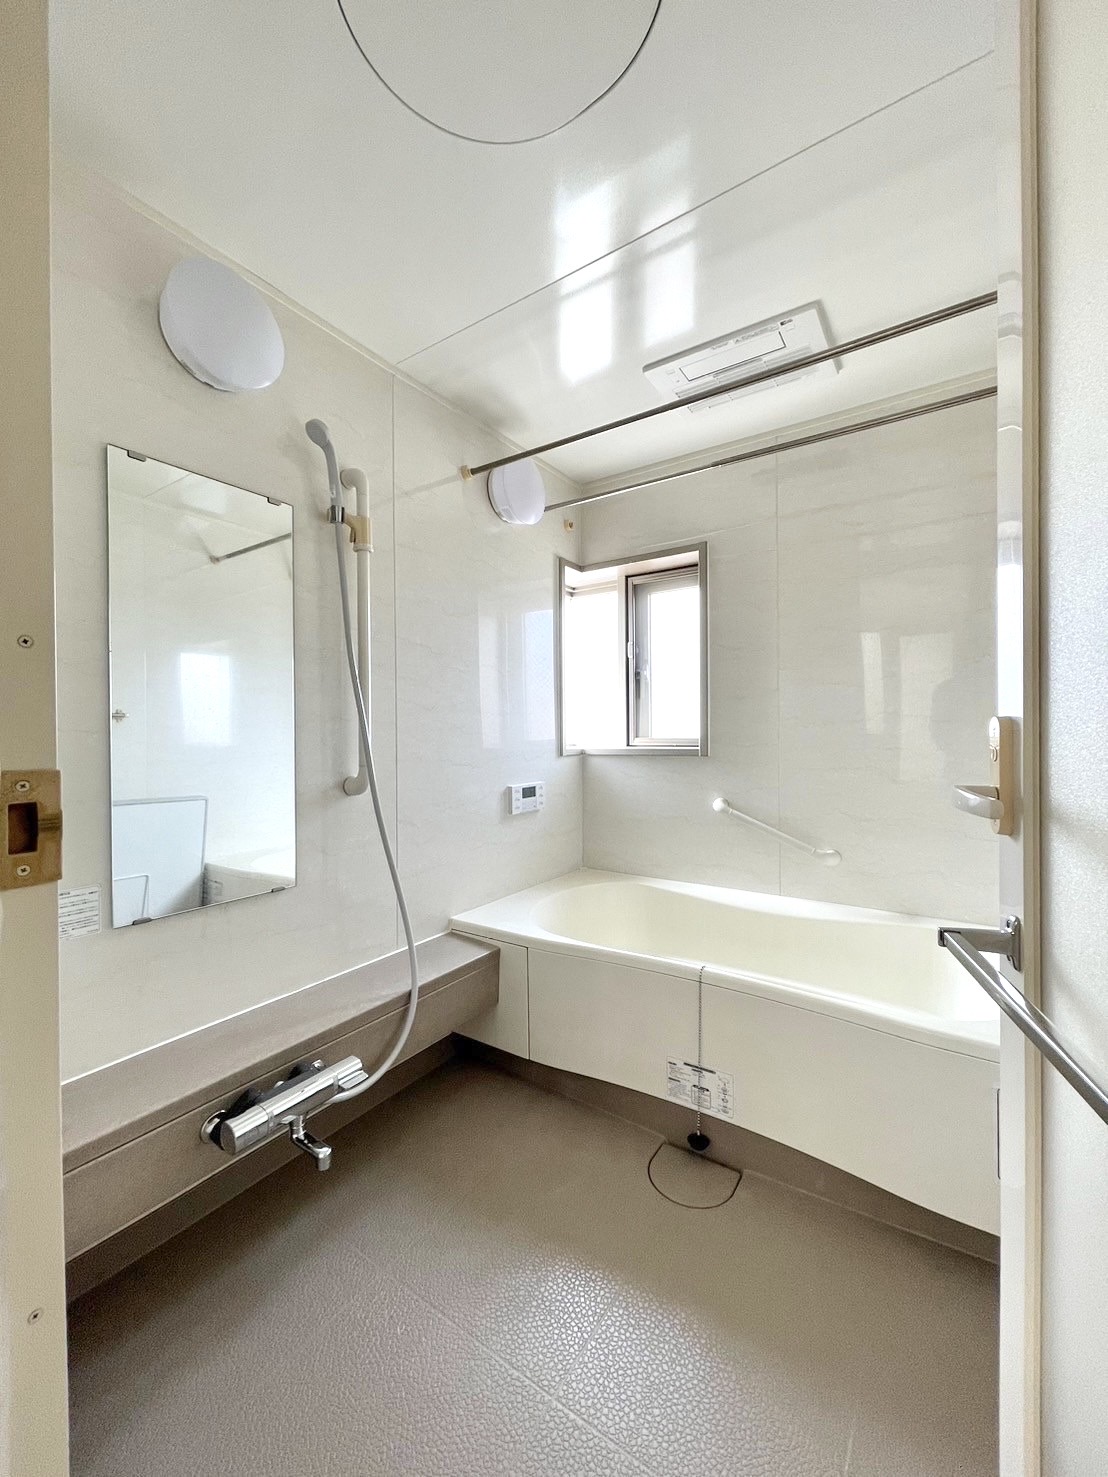 愛知県日進市にてマンションリフォーム工事が完了しました。キッチンとお風呂、トイレの水まわり交換工事です。システムキッチンを まるごとLIXILのノクトに変更。食洗器ミーレやウォールユニットの便利なな収納棚を搭載したこだわりのキッチンです。クロスをアクセントクロスに。ユニットバスはそのままで浴室暖房乾燥を取り入れています。また水栓を新しく交換。 〈名古屋リフォームの施工事例〉|[公式]名古屋リフォーム|名古屋リフォームは名古屋市・日進市・春日井市のおしゃれなリフォーム＆リノベーション専門会社です